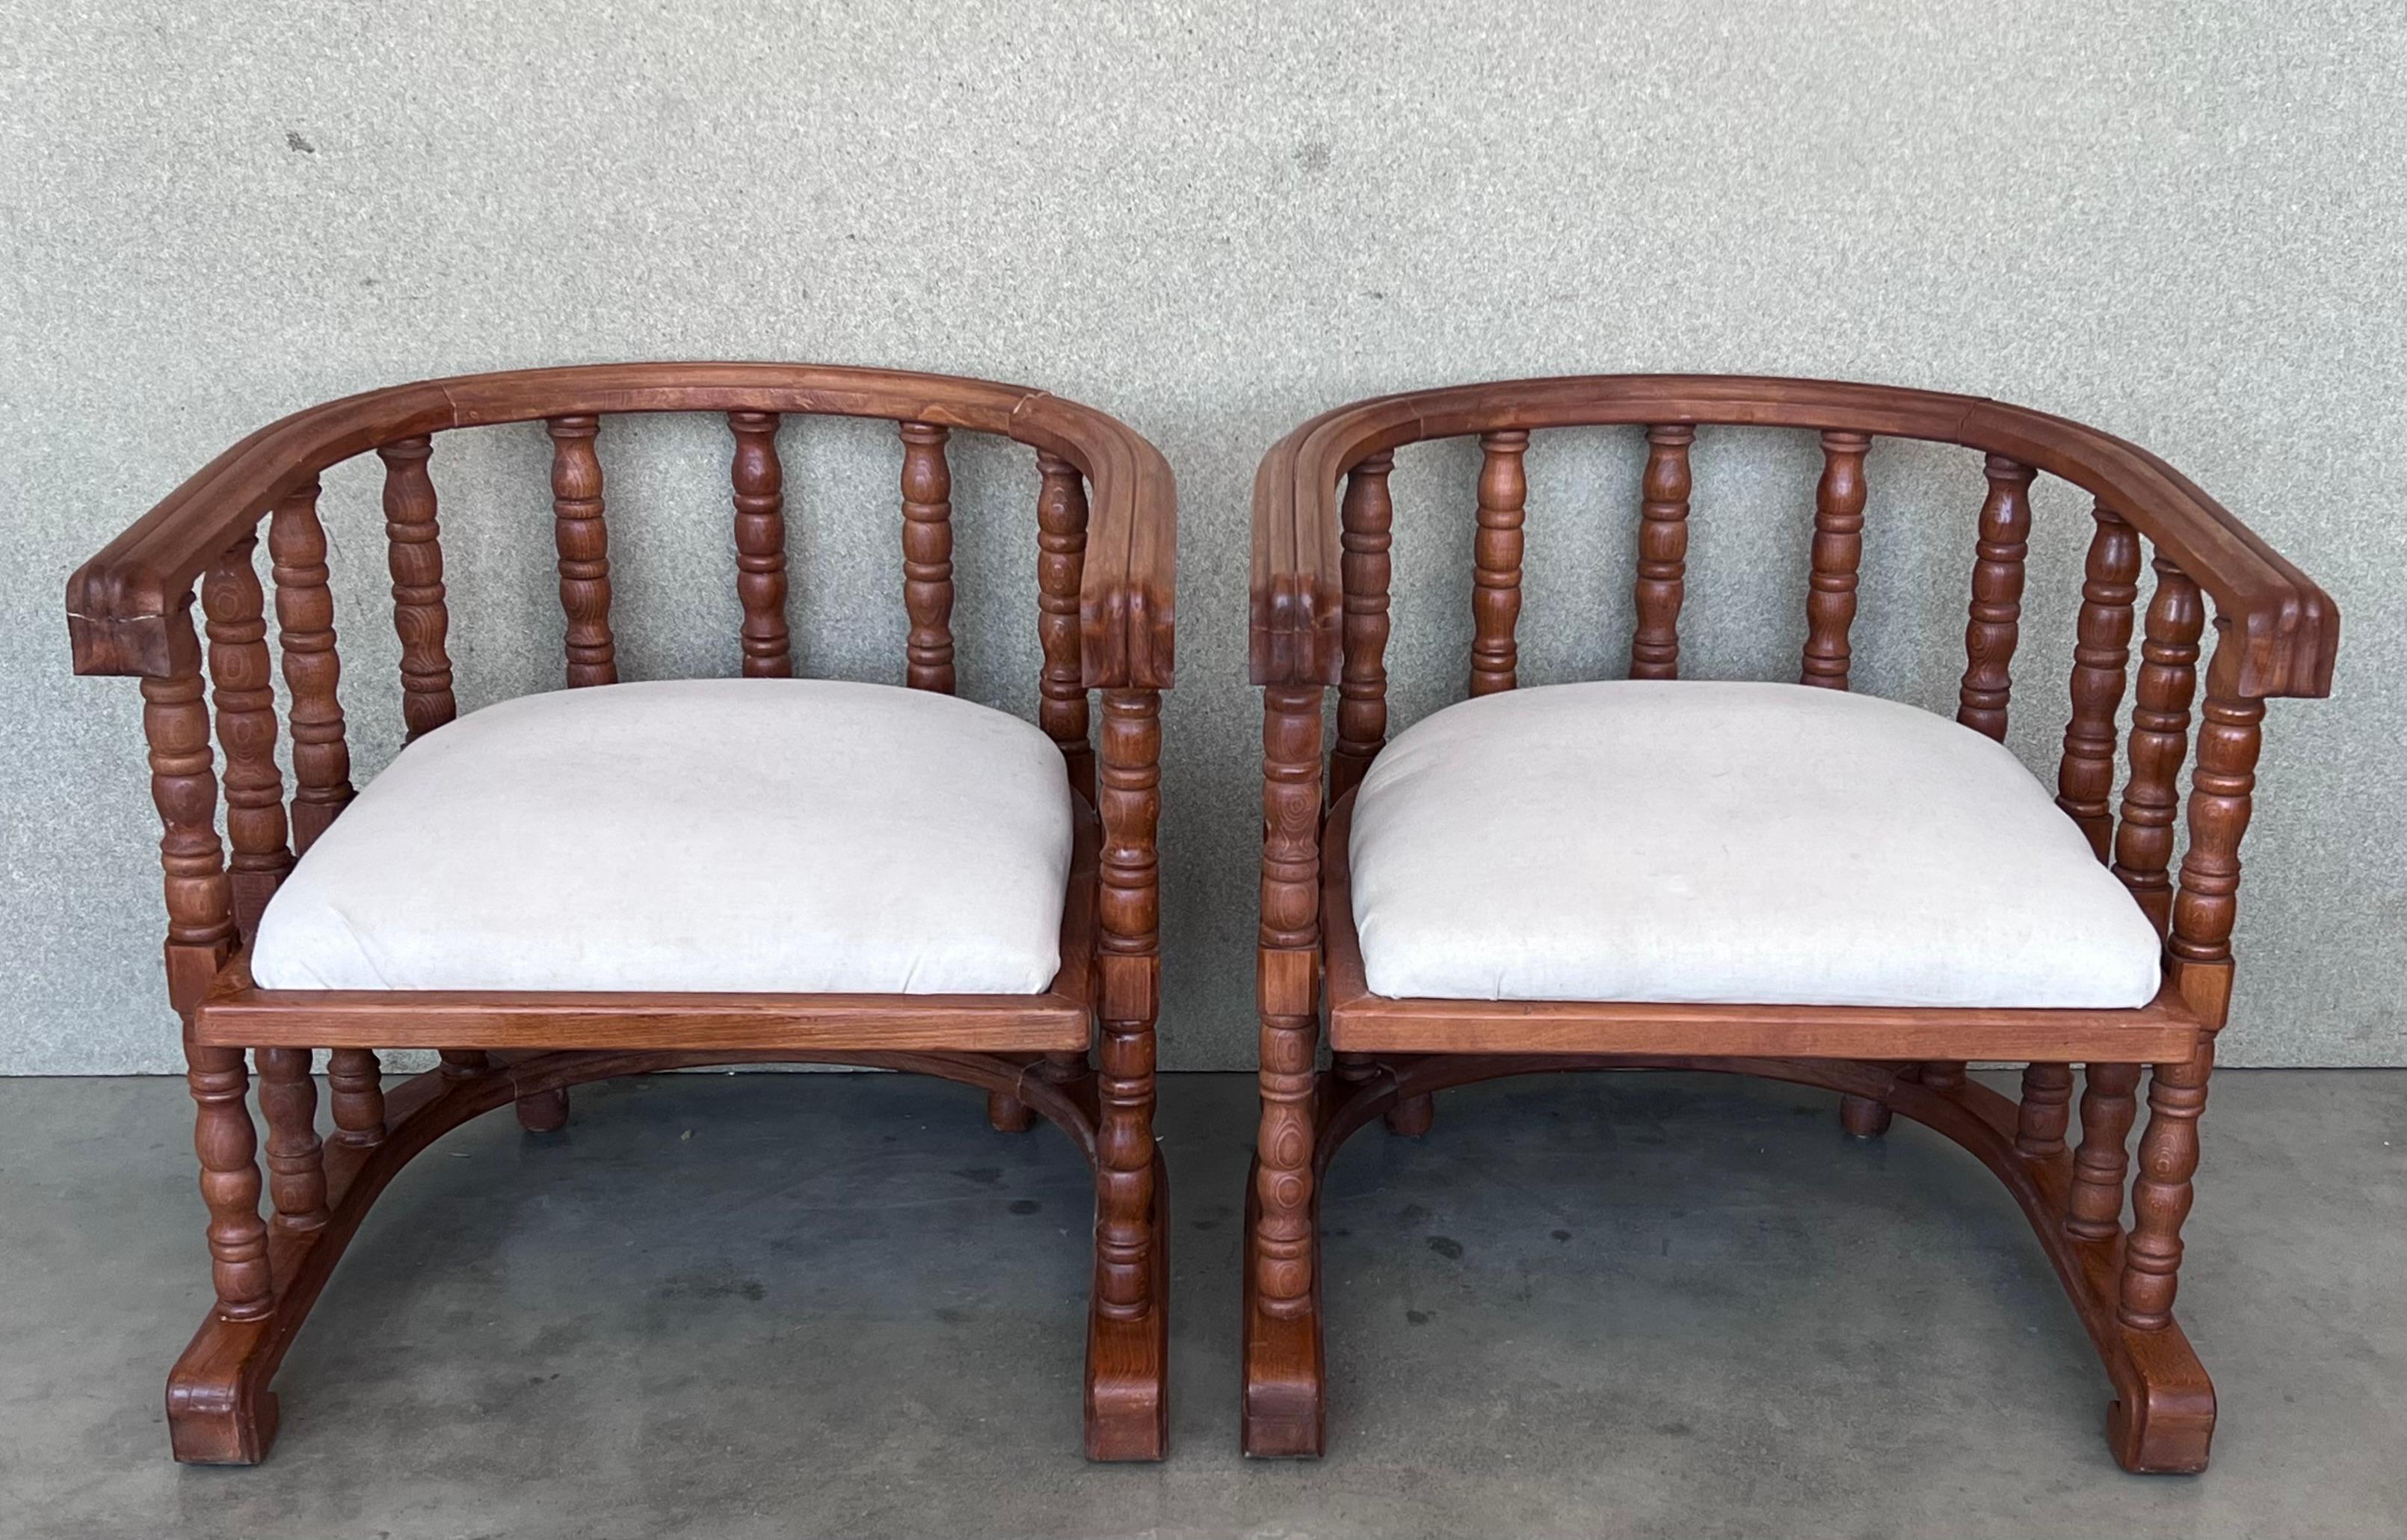 Kürzlich restauriertes Paar Vintage-Stühle mit Nussbaumgestell und weißer Polsterung.